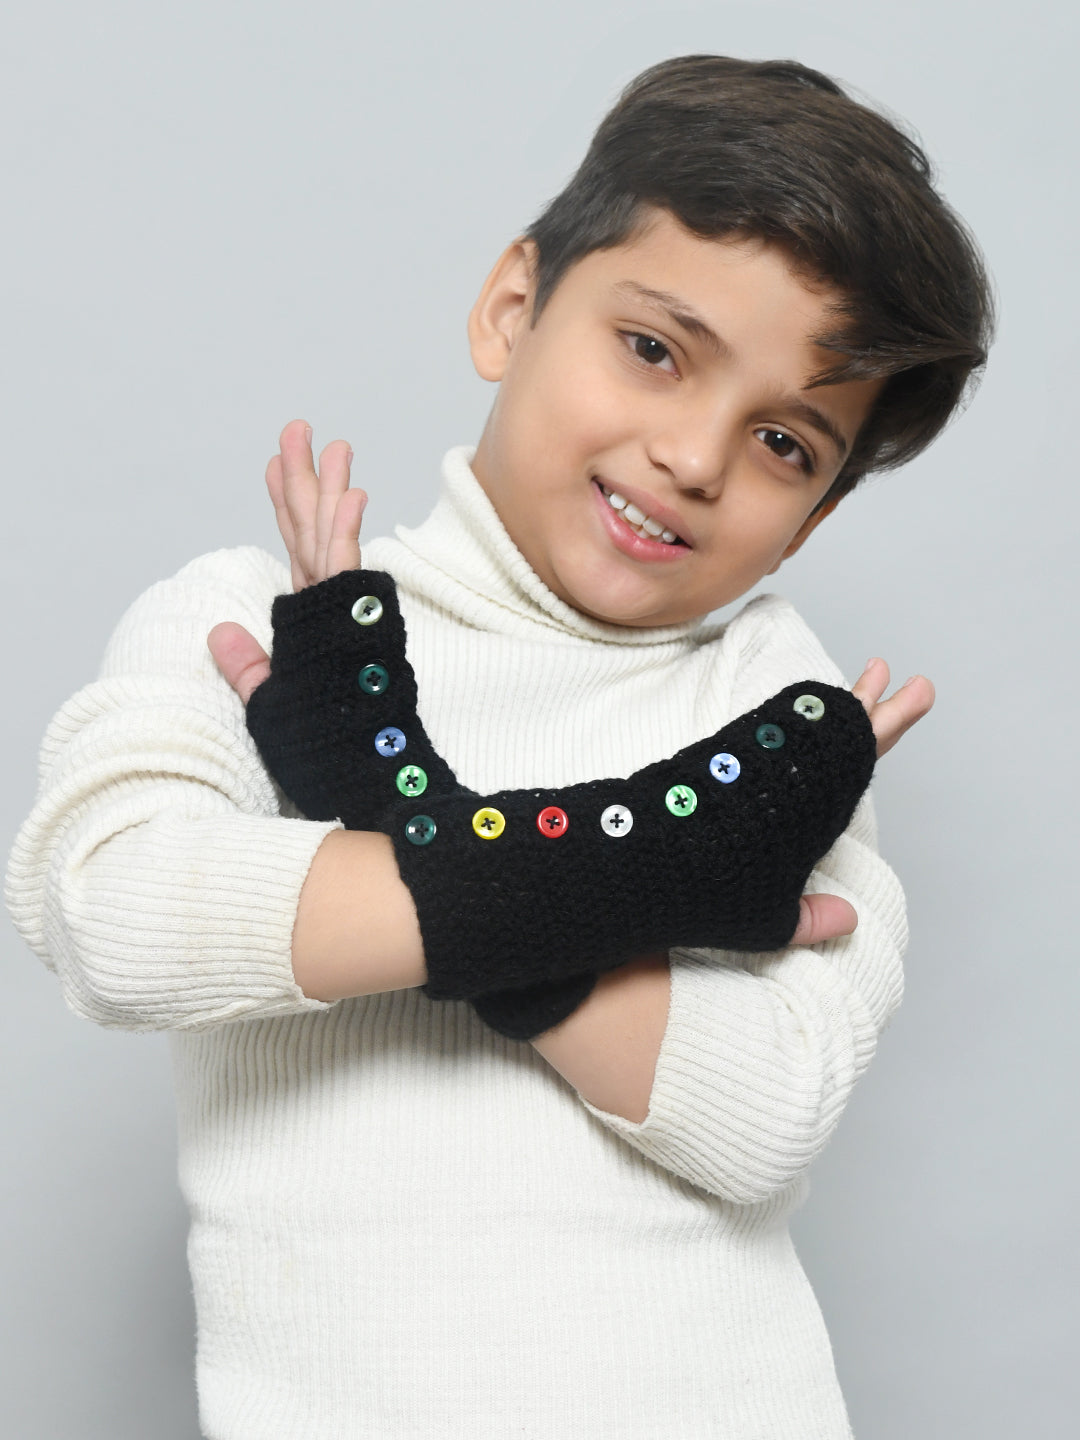 Black Adjustable Handmade Woollen Fingerless Gloves For Girls and Boys